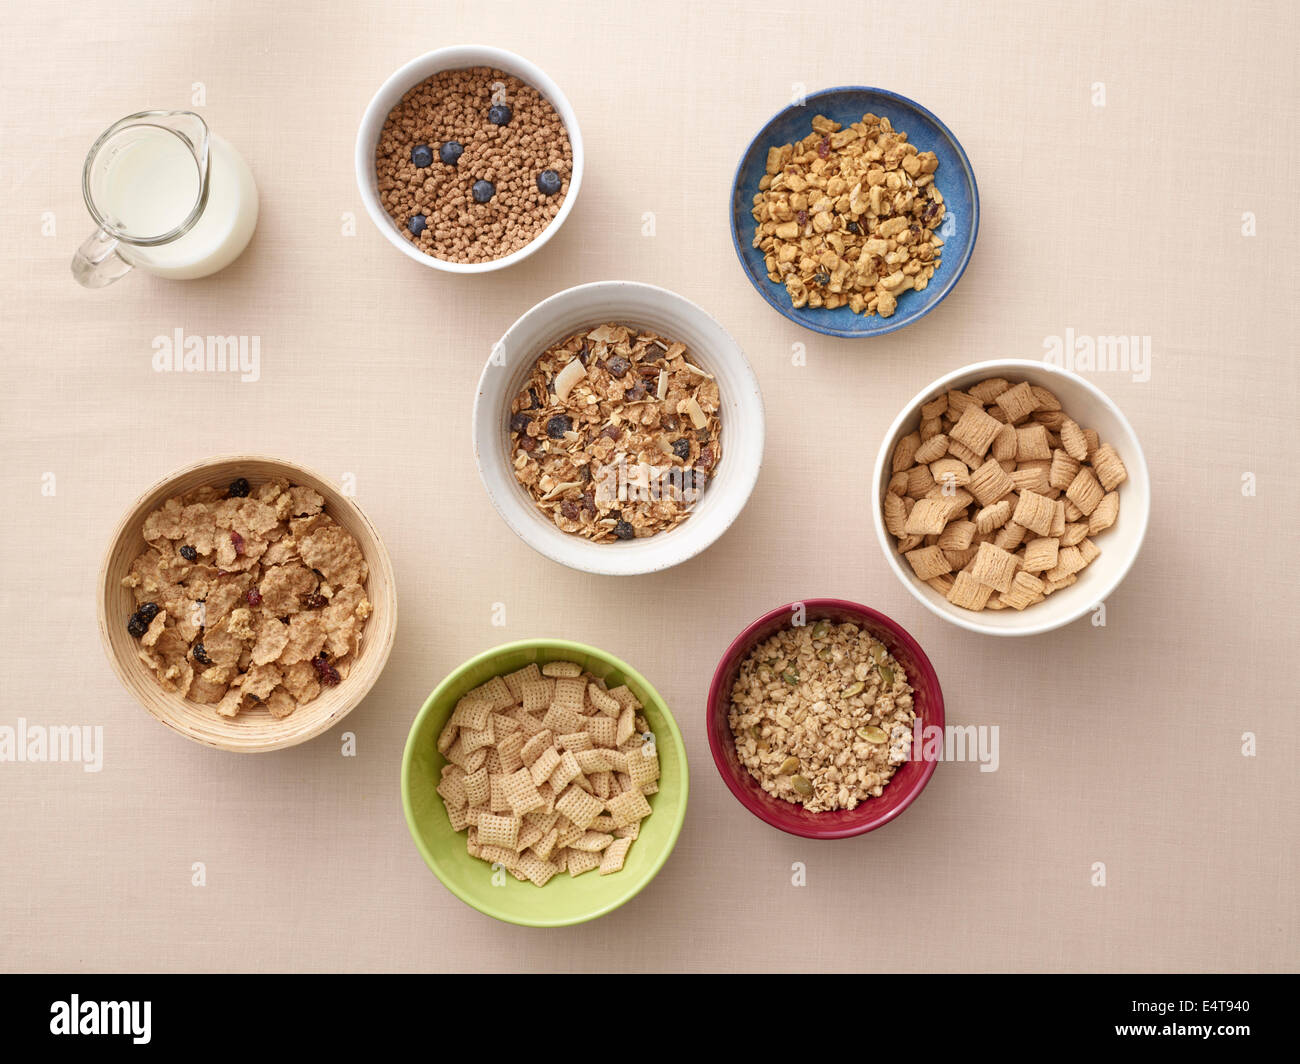 Vista aérea de cuencos de una variedad de cereales saludables y la jarra de leche, Foto de estudio Foto de stock